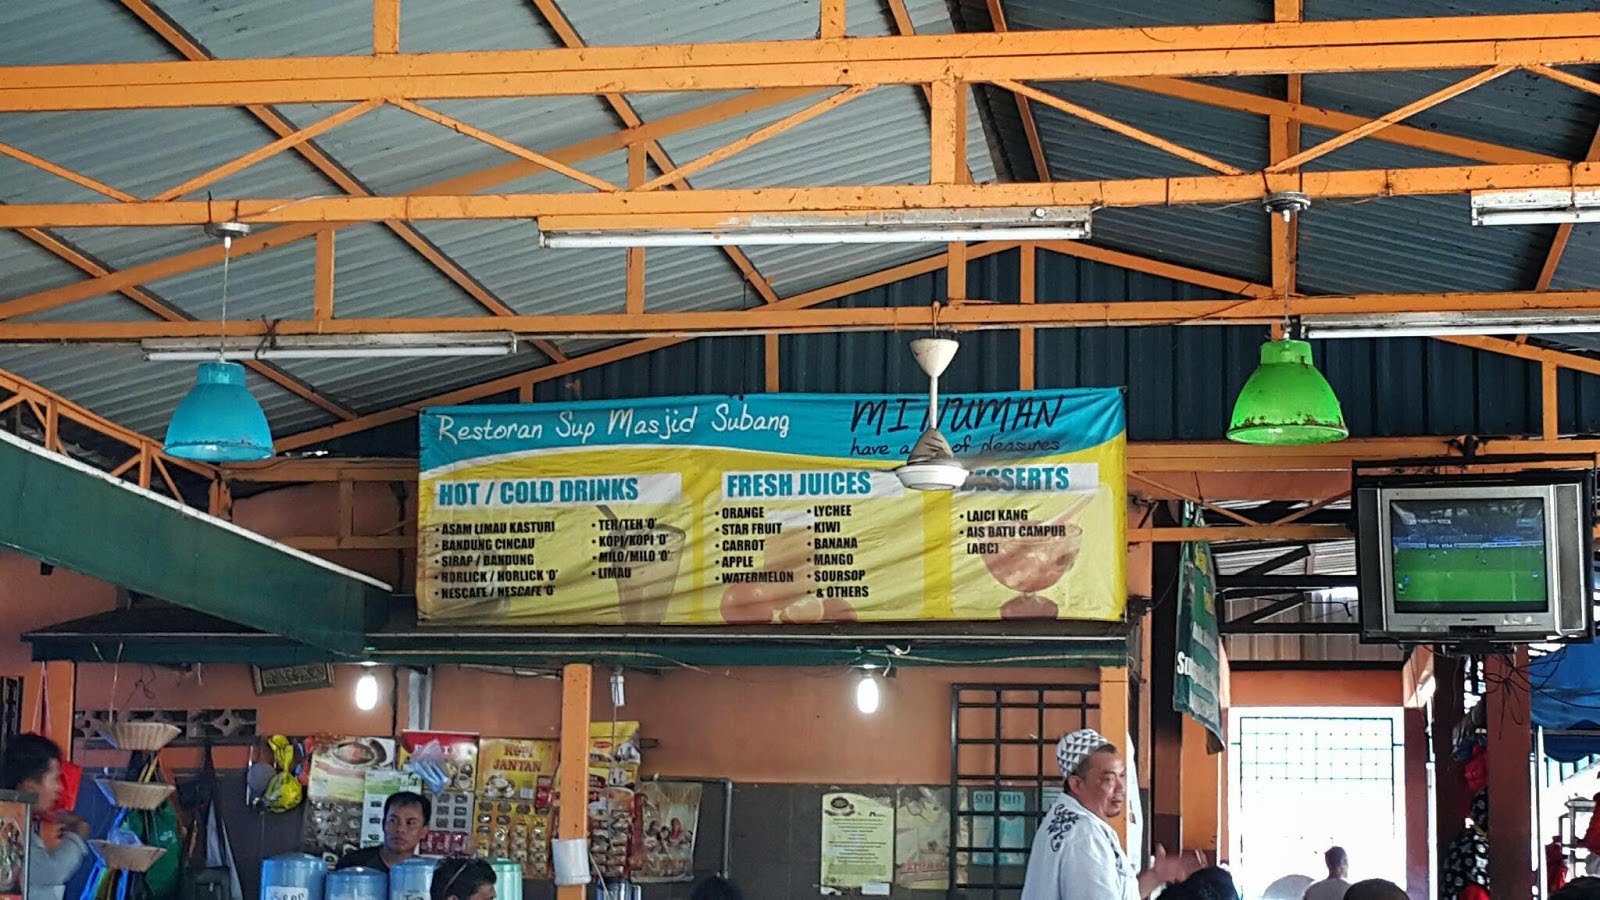 Sedap! 10 Kedai Makan Subang (Honest Review) 2023 4. Kedai Makan Subang Restoran AMS Sup Masjid Subang